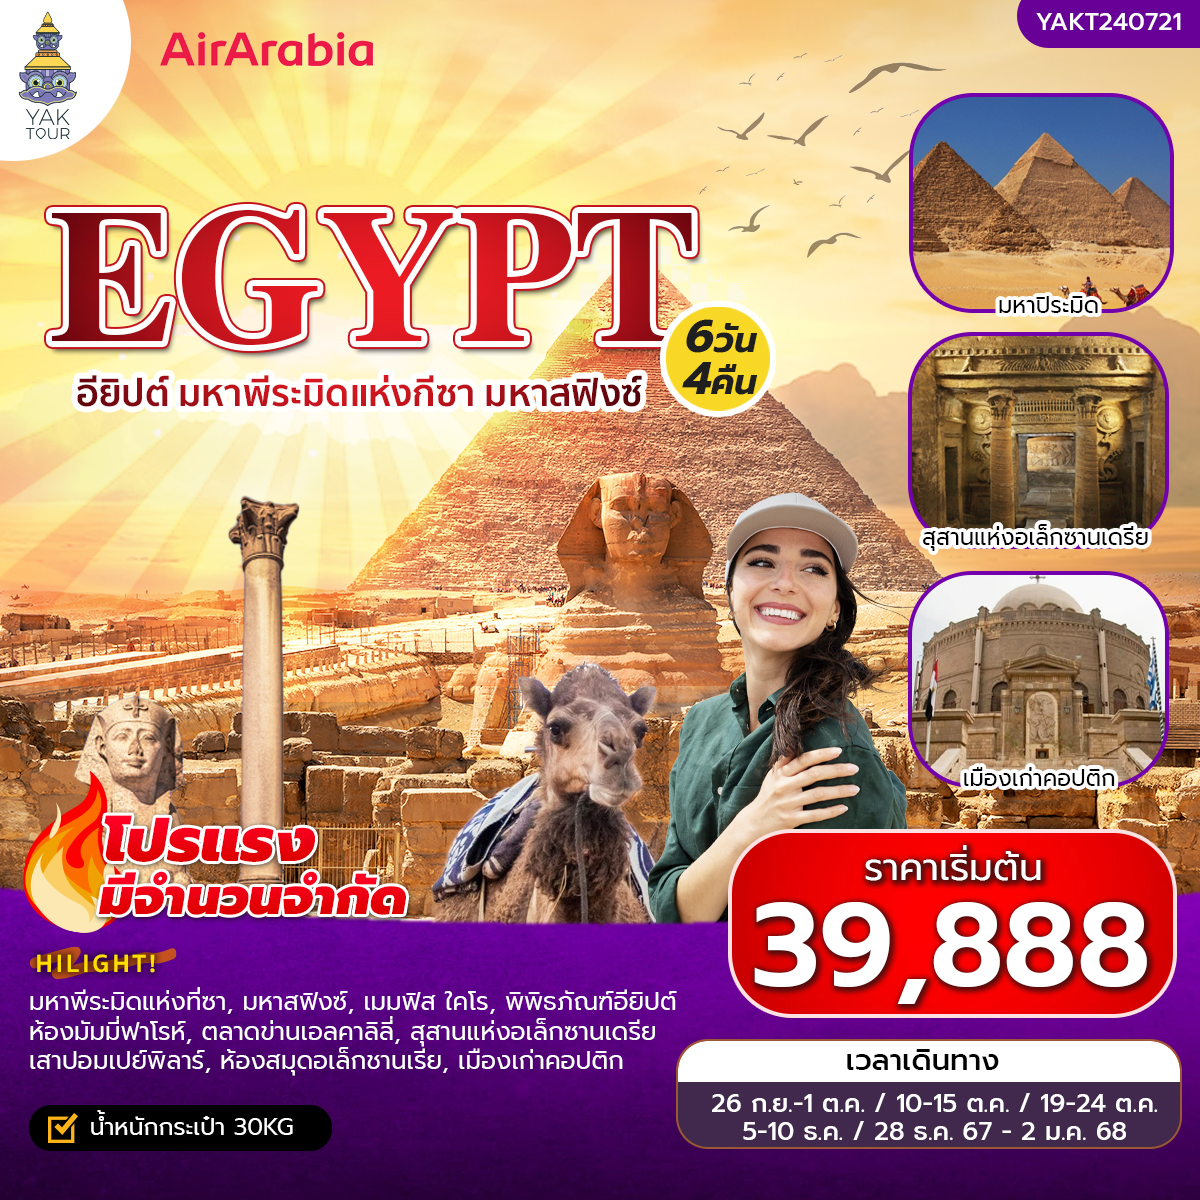 (CL) ทัวร์อียิปต์ เที่ยวอียิปต์ มหาพีระมิดแห่งกีซา มหาสฟิงซ์ 6 วัน 4 คืน ยักษ์ทัวร์ 